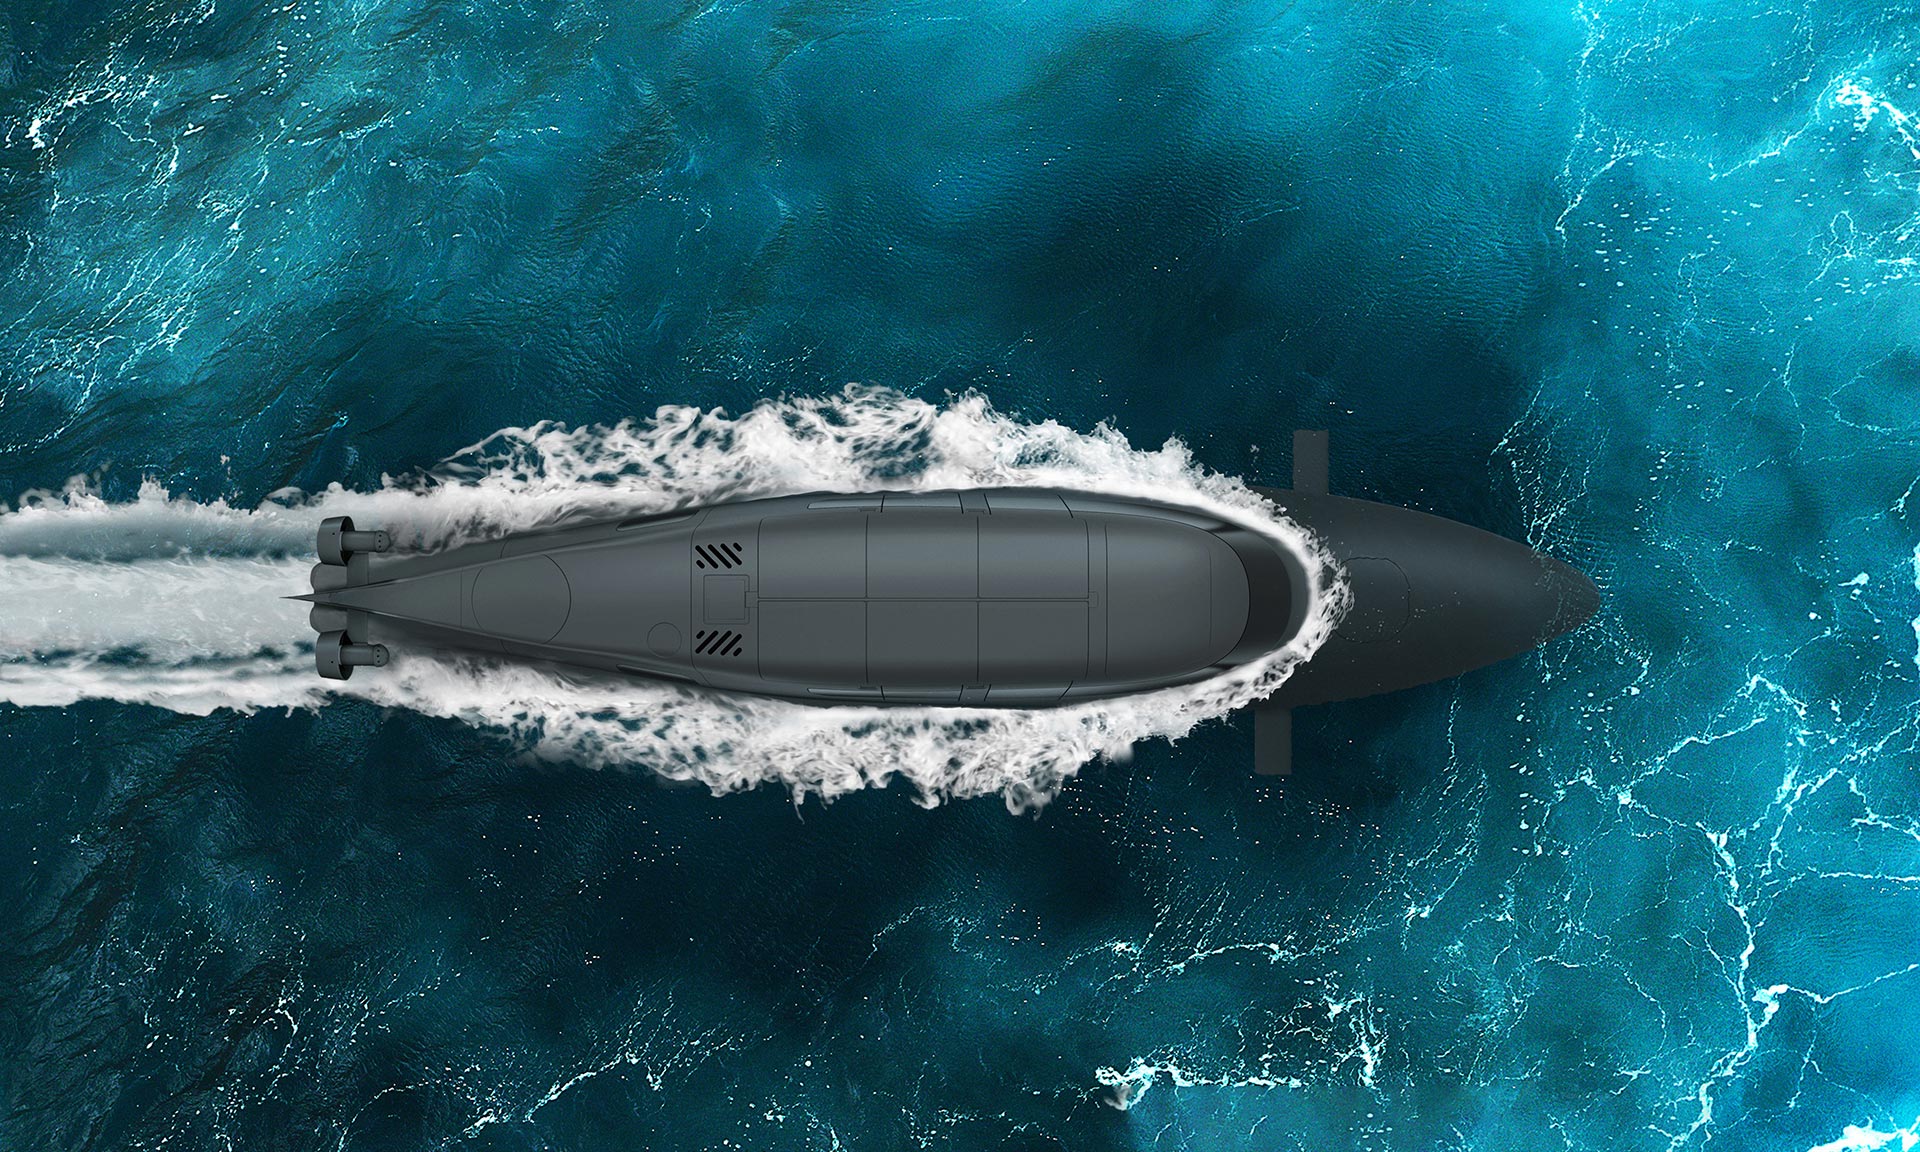 Victa je futuristický sportovní člun schopný ponoru až na čtyři hodiny